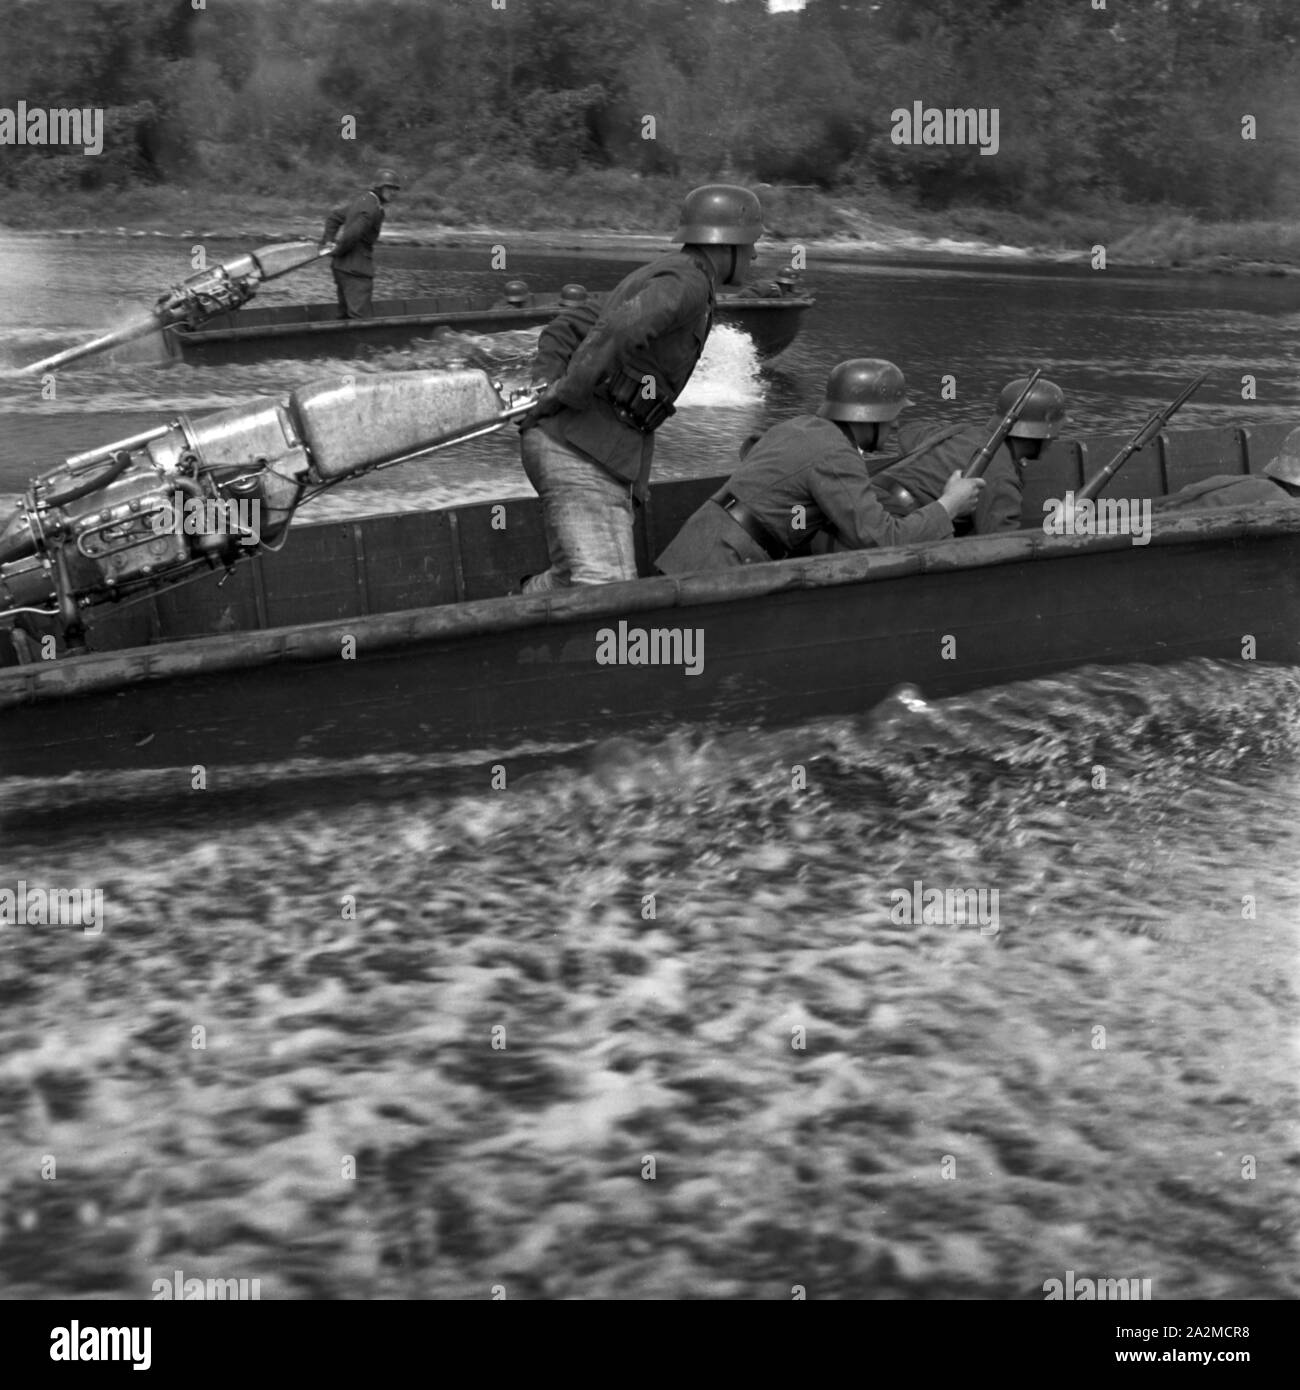 Original-Bildunterschrift: Strumboote bringen Pionier Stoßtrupps ans Ufer, um feindliche Stellungen zu bekämpfen, Deutschland 1940er Jahre. Angriff Boote tragen Militärtechnik Truppen zu einer feindlichen Ufer, um feindliche Stellungen kämpfen, Deutschland 1940. Stockfoto